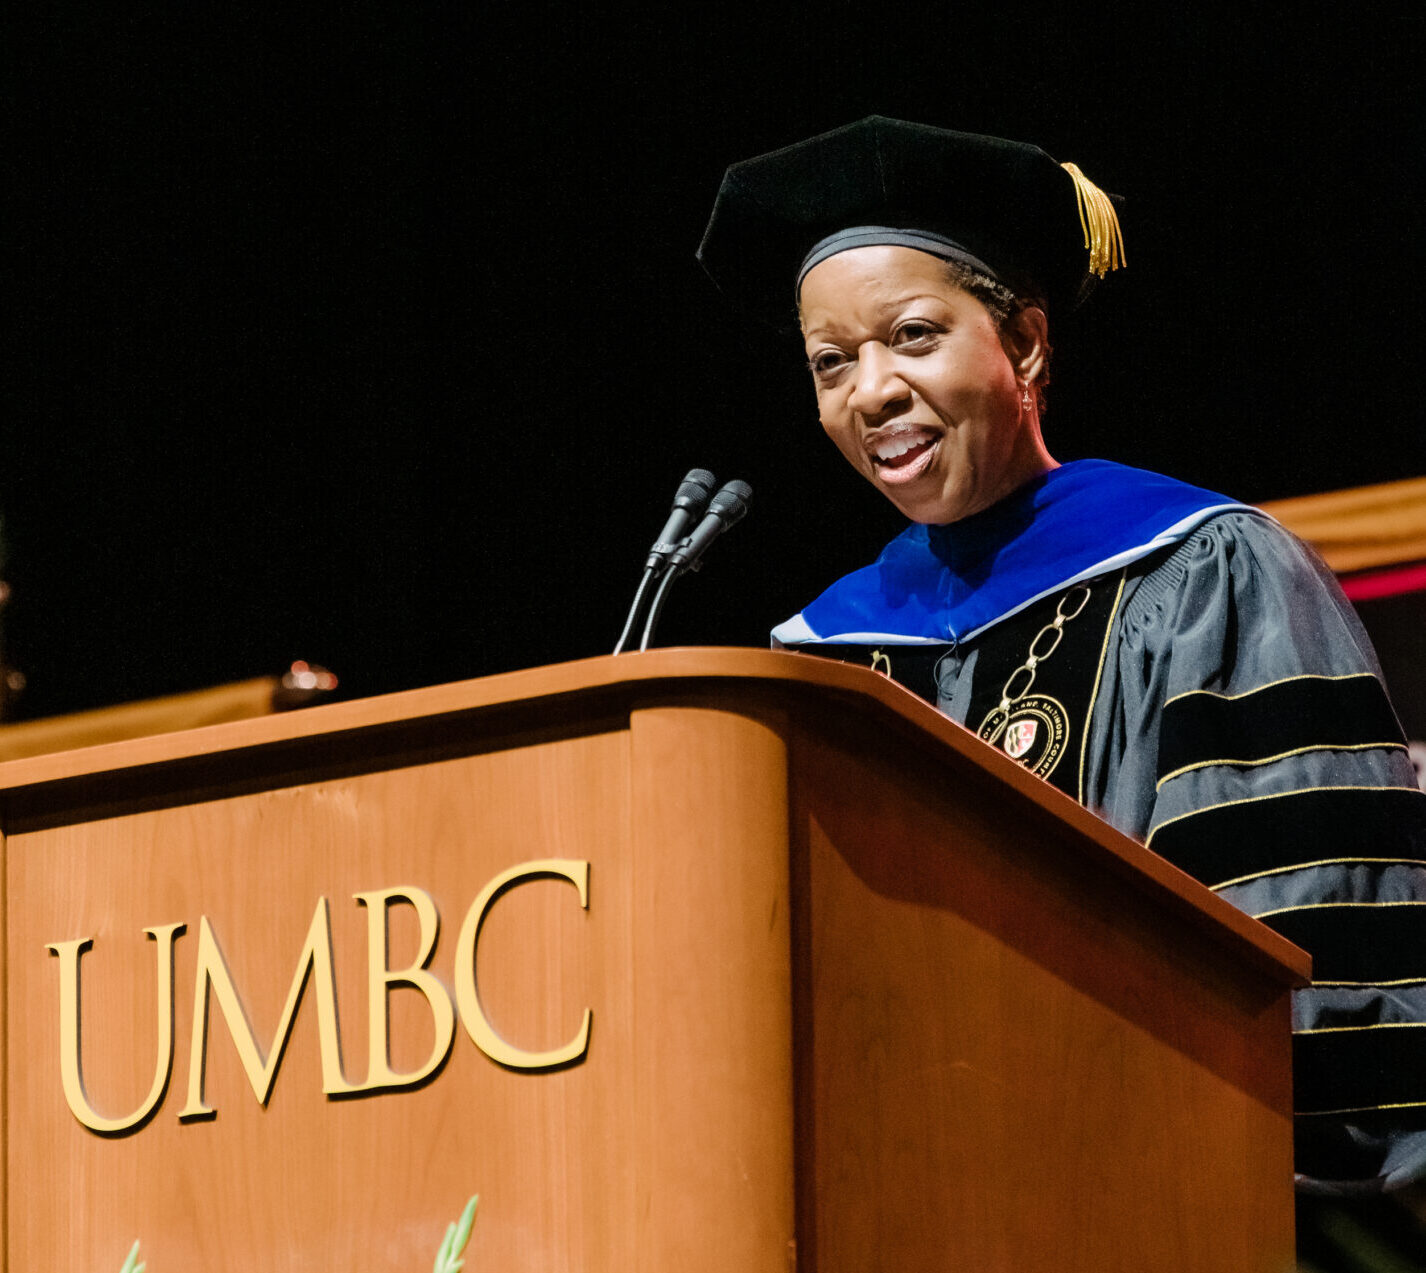 Woman in university regalia speaking at UMBC podium